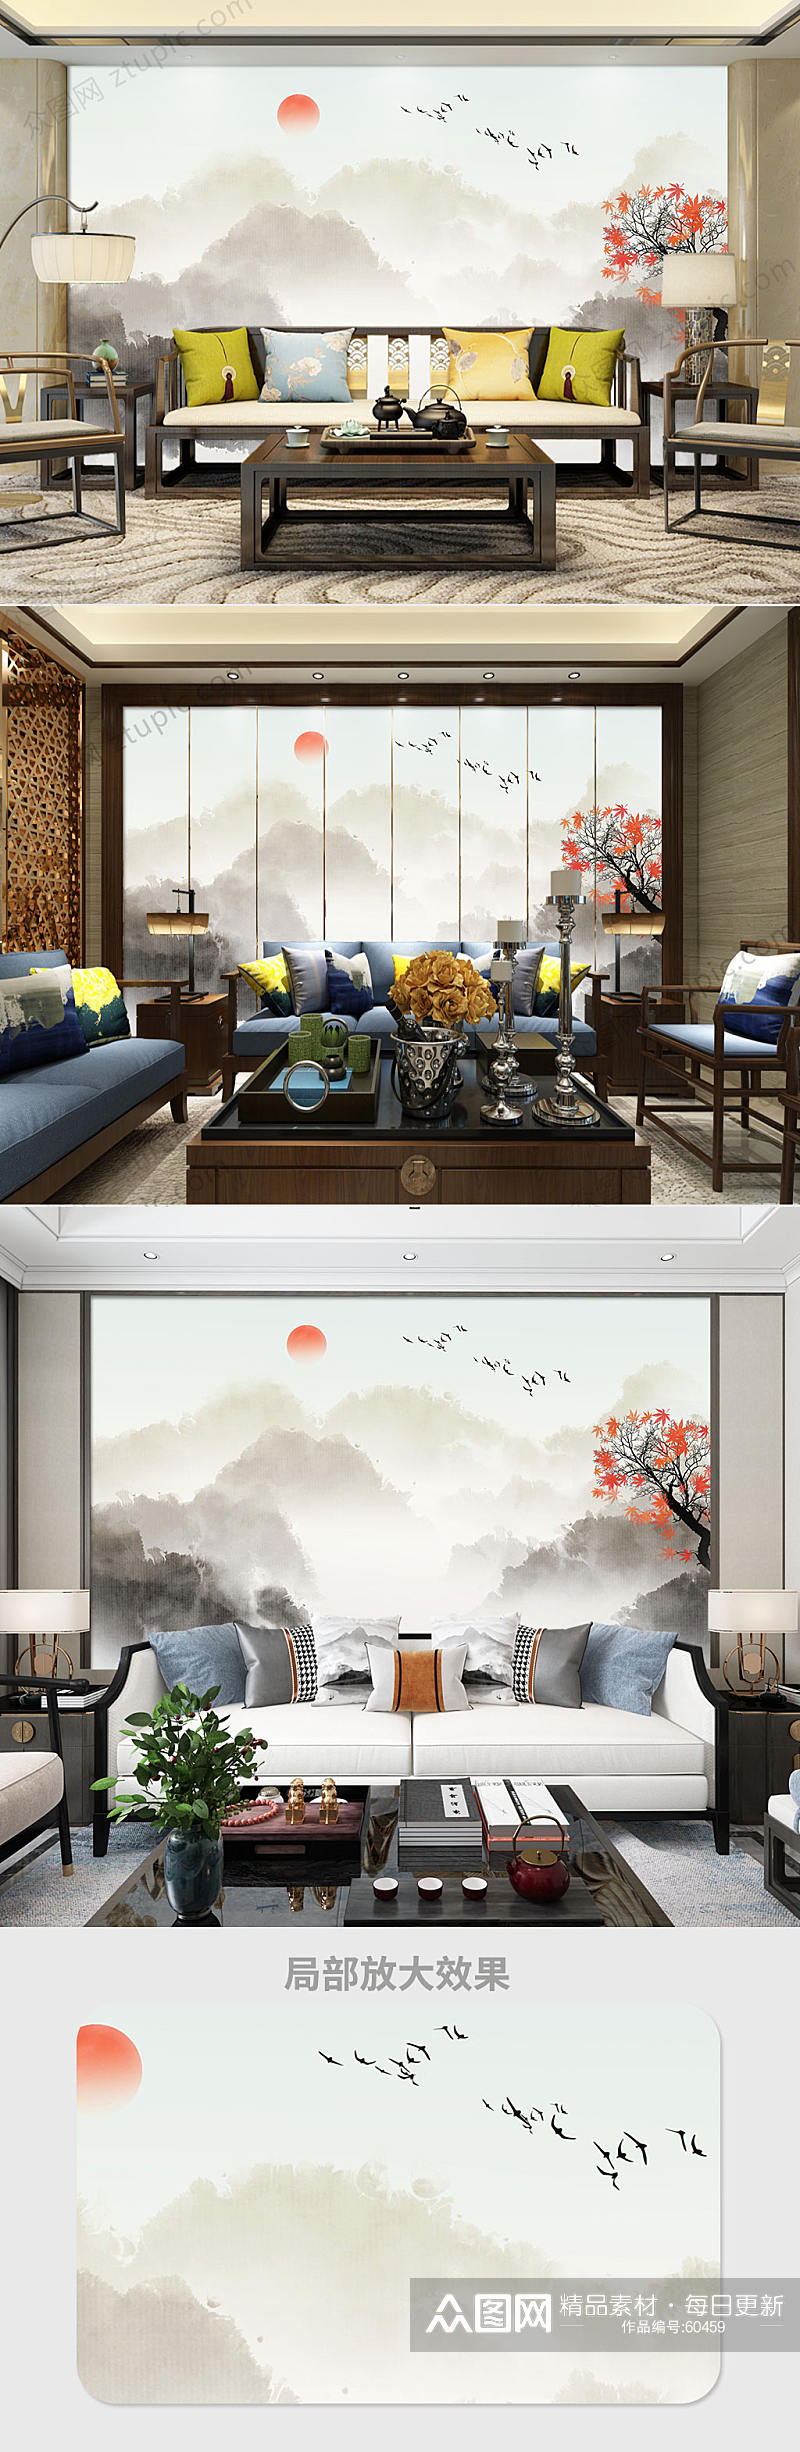 中国水墨风山水背景墙素材